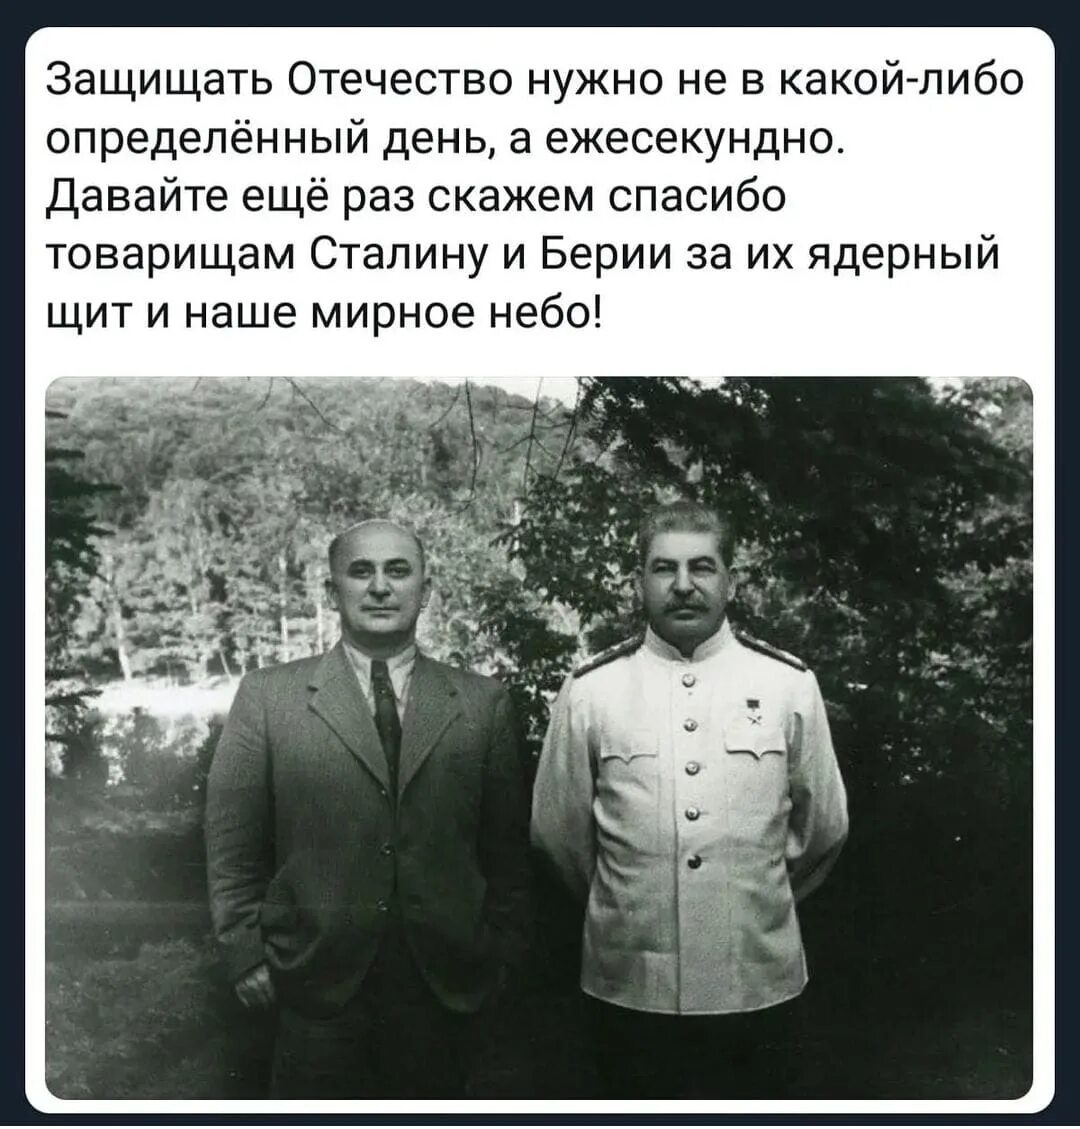 Сталин и Берия. Сталин русский грузинского происхождения. Сталин я русский человек грузинской национальности. Сталинский ядерный щит. Сталин и берия анекдот